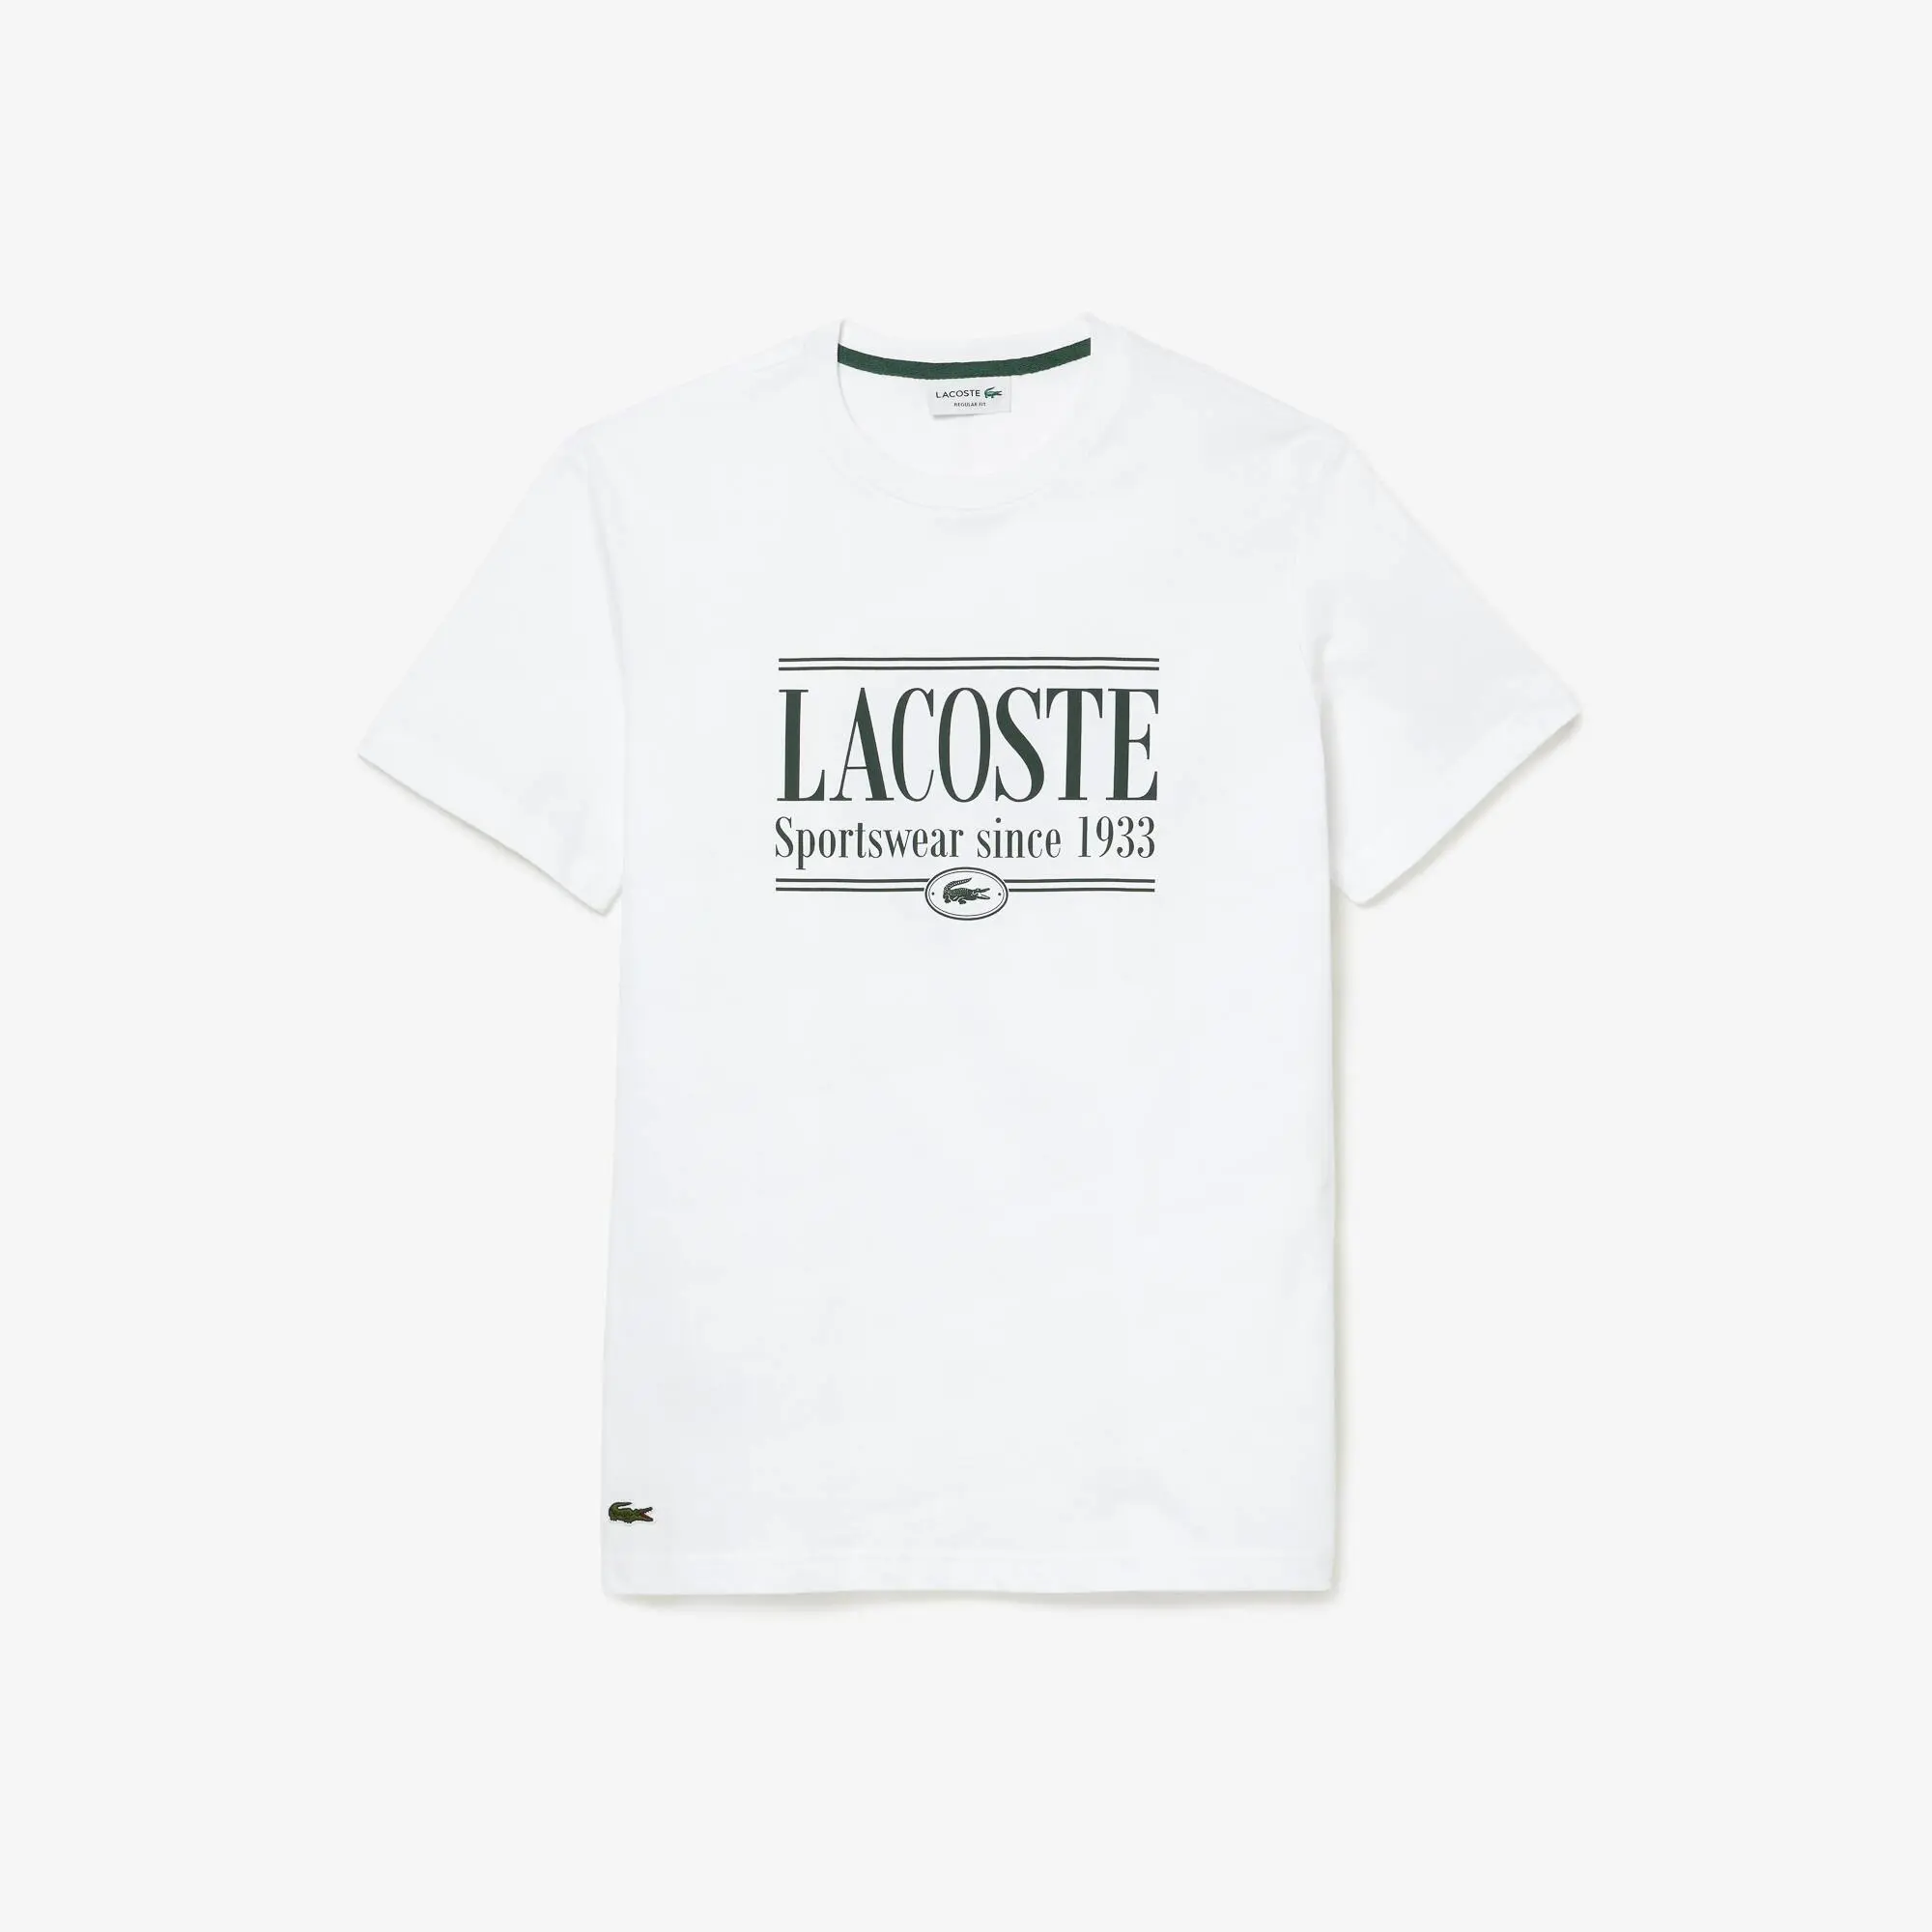 Lacoste T-shirt homme regular fit en jersey avec inscription Lacoste. 2